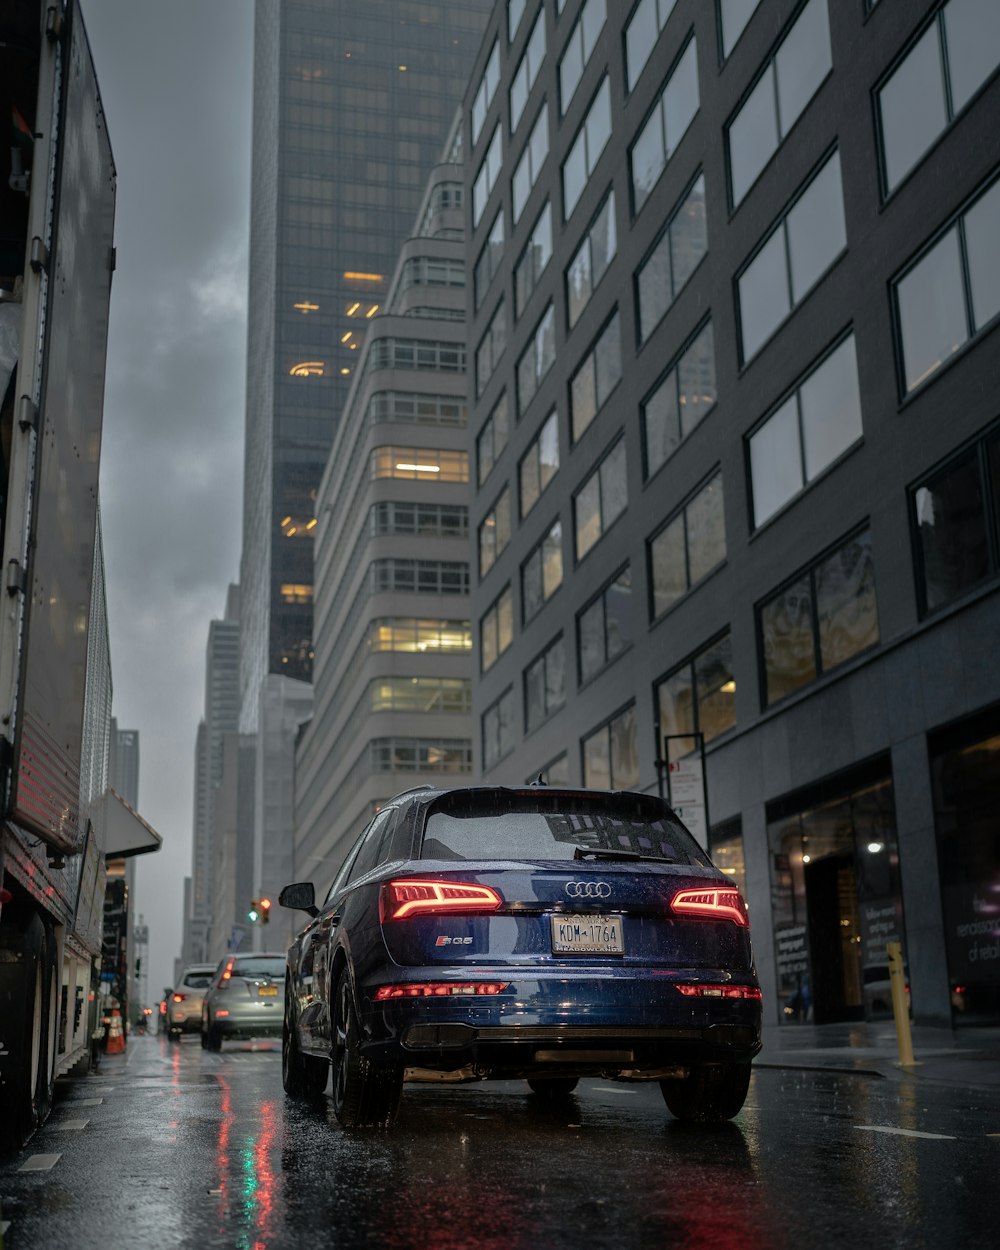 Audi A 4 nera sulla strada tra i grattacieli durante il giorno